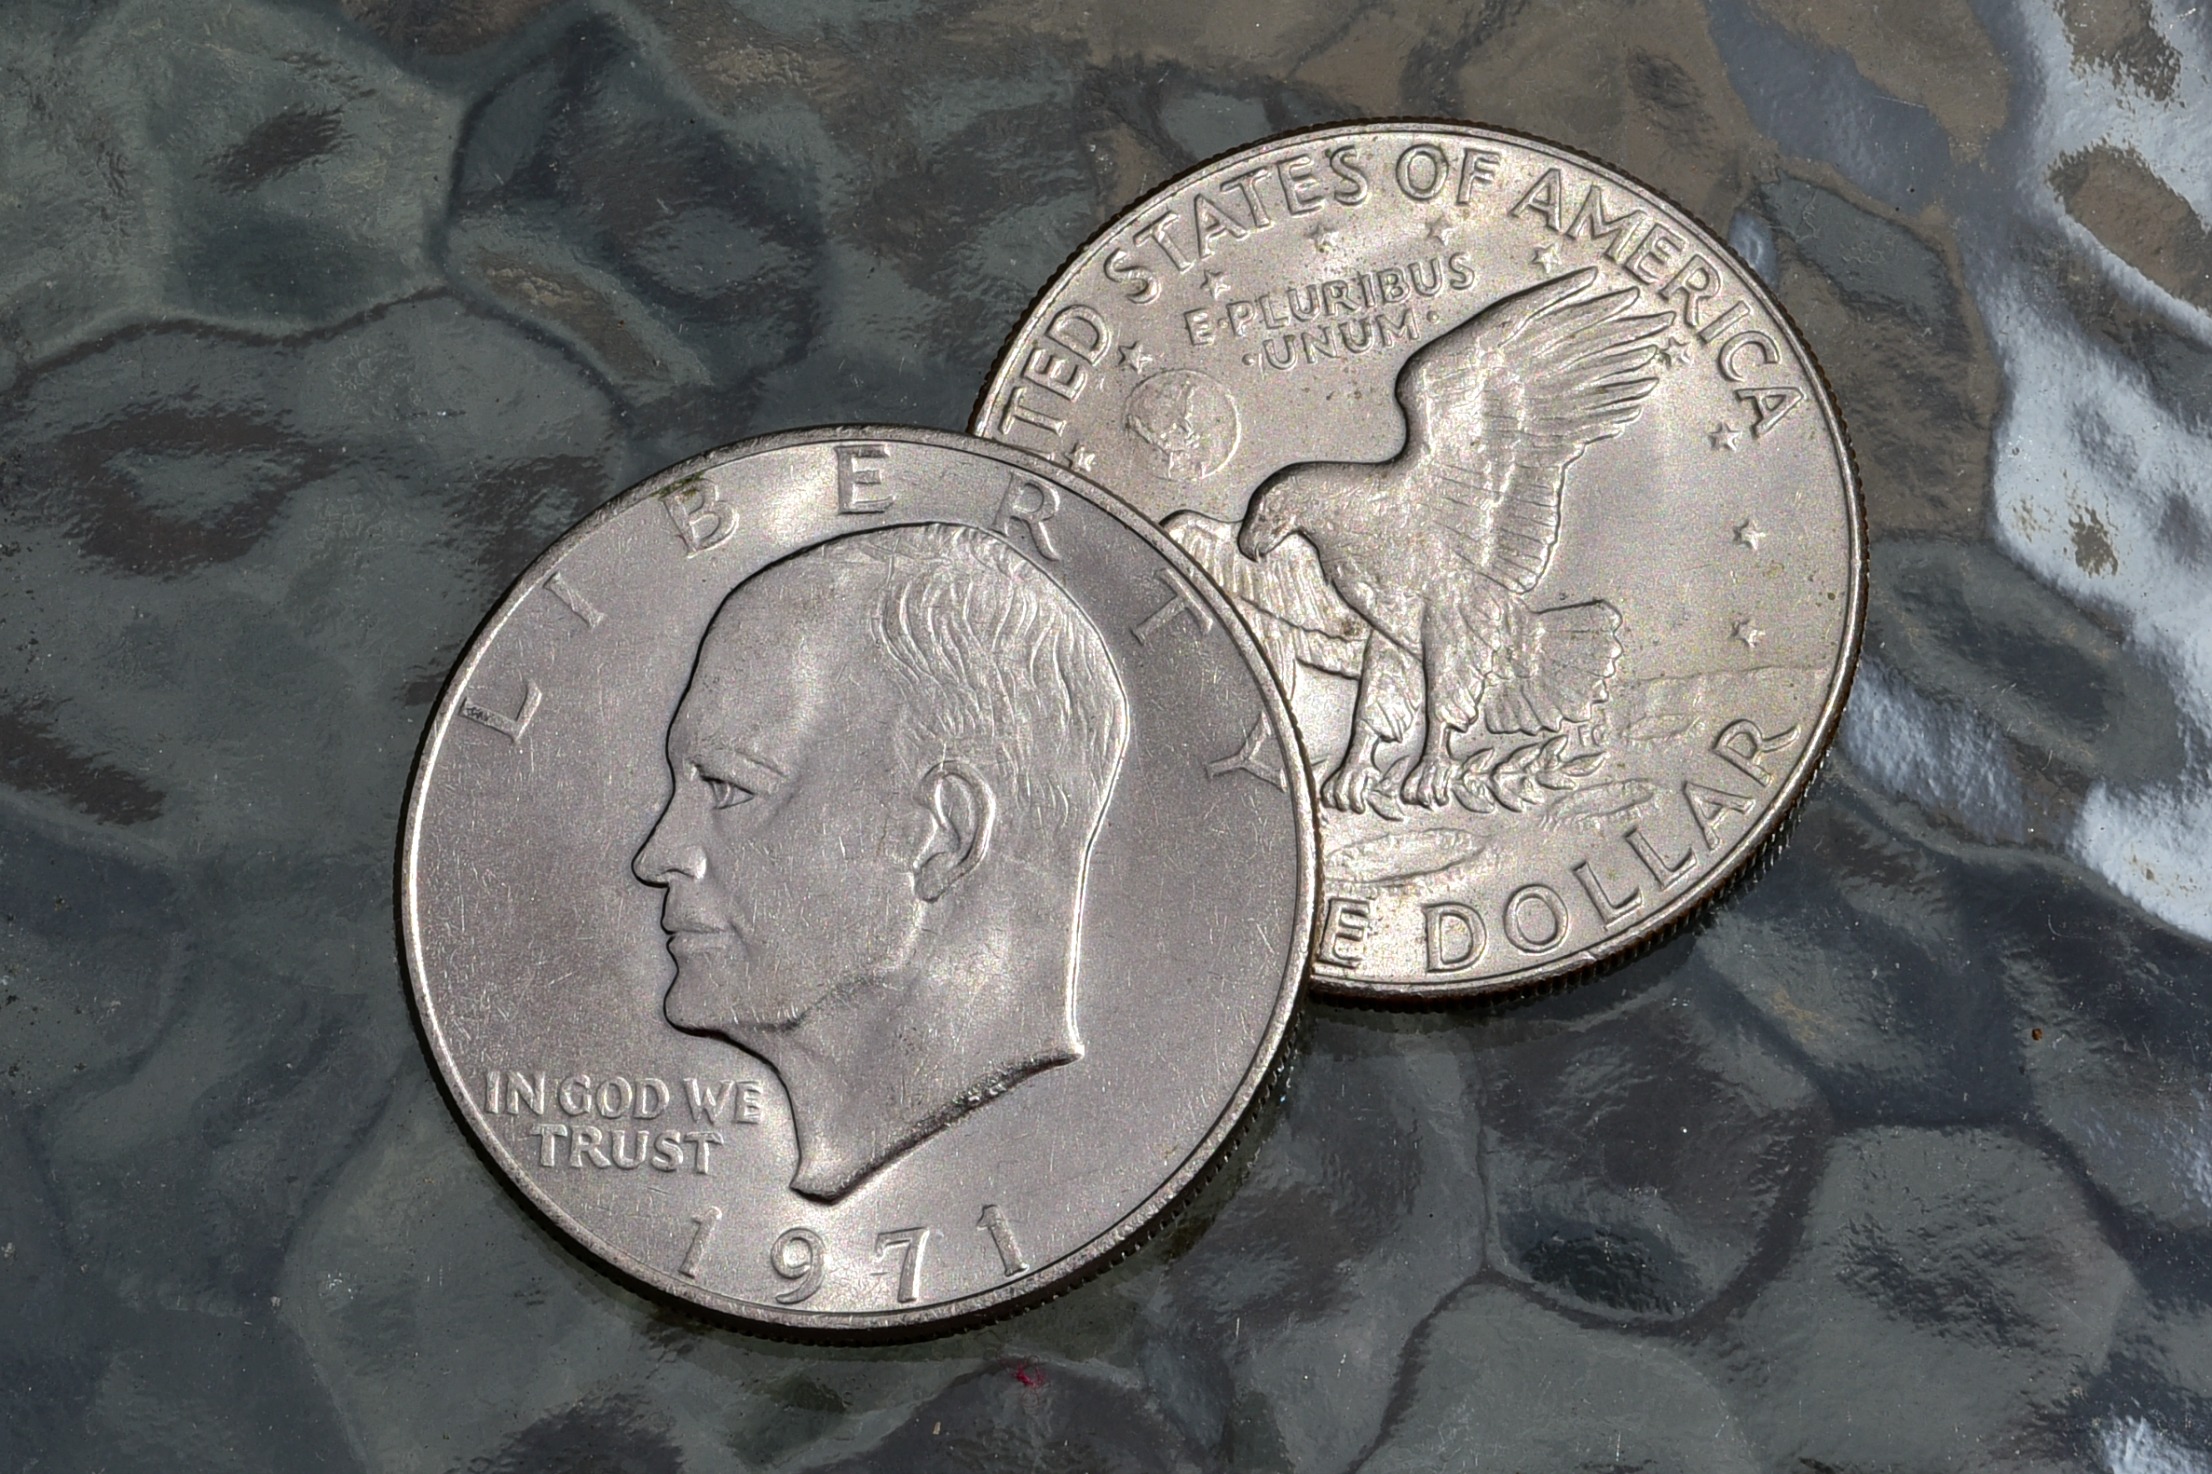 Eisenhower Dollar Coin Errors Worth 5 000 The U S Coins Guide,Thai Food Pad Thai